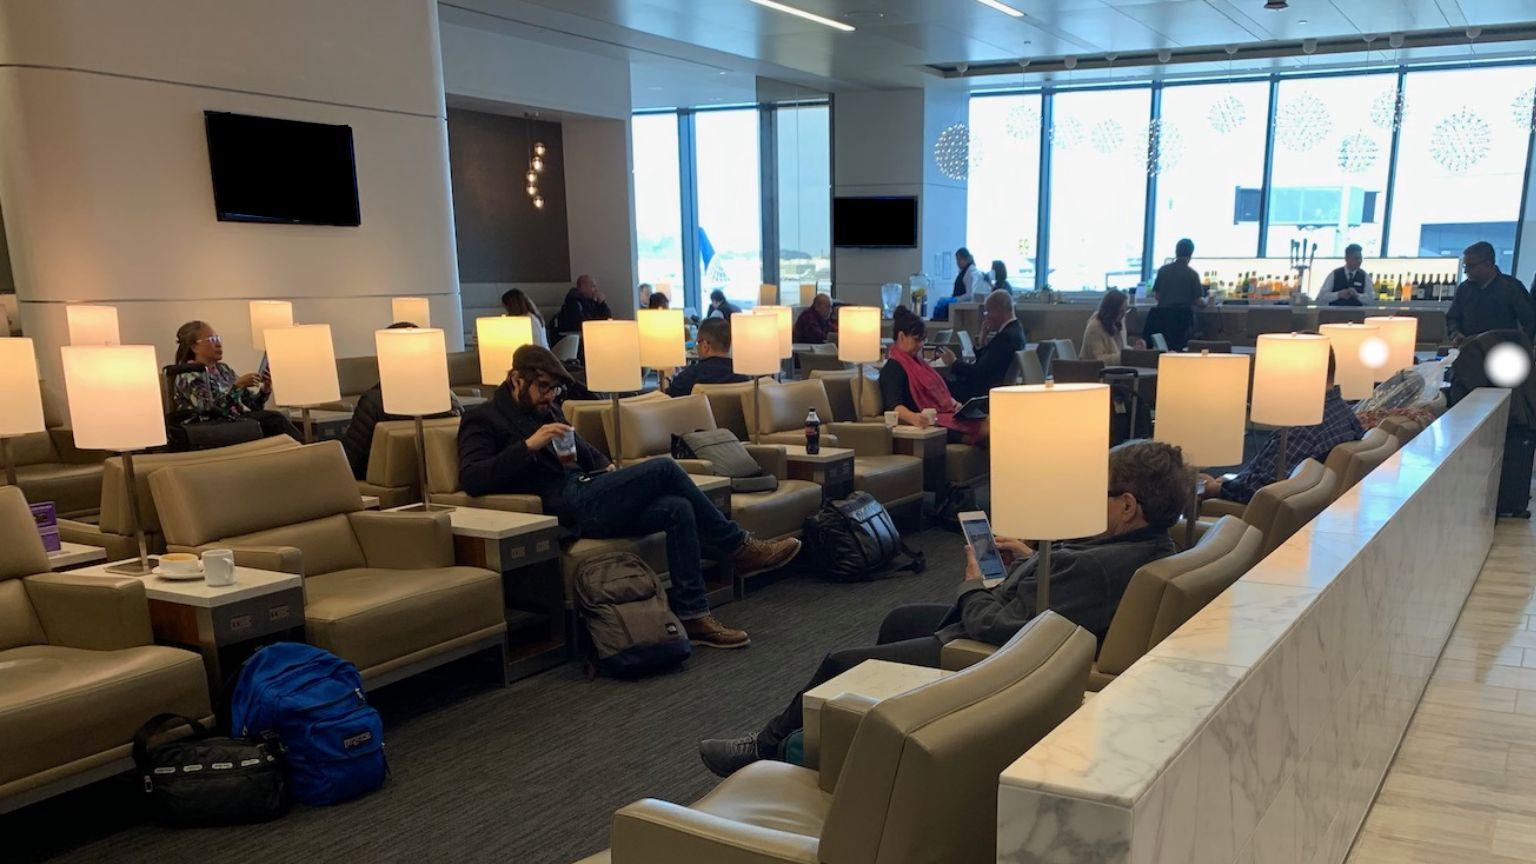 United Club SFO Lounge, Terminal 3 – Concourse E